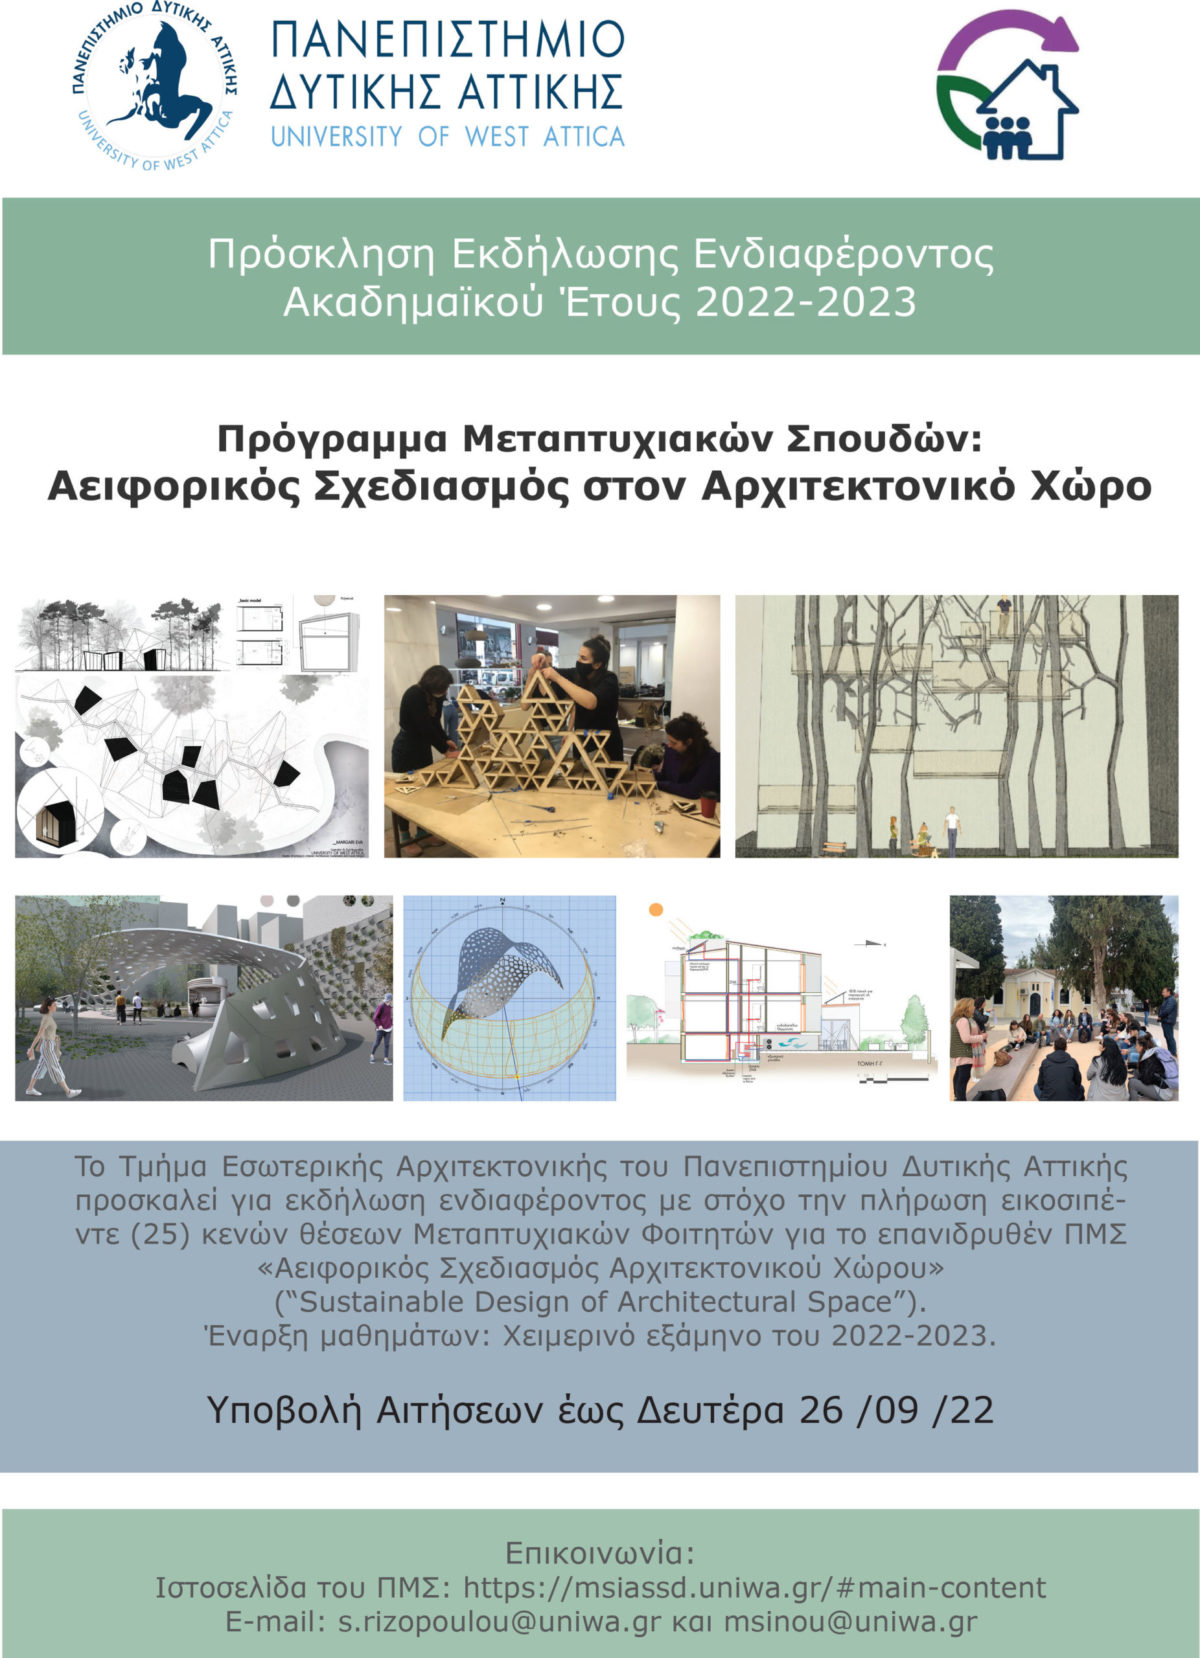 Πρόγραμμα Μεταπτυχιακών Σπουδών «Αειφορικός Σχεδιασμός Αρχιτεκτονικού Χώρου» (τίτλος στα αγγλικά: “Sustainable Design of Architectural Space”» από το Τμήμα Εσωτερικής Αρχιτεκτονικής του Πανεπιστημίου Δυτικής Αττικής (2022-2023)